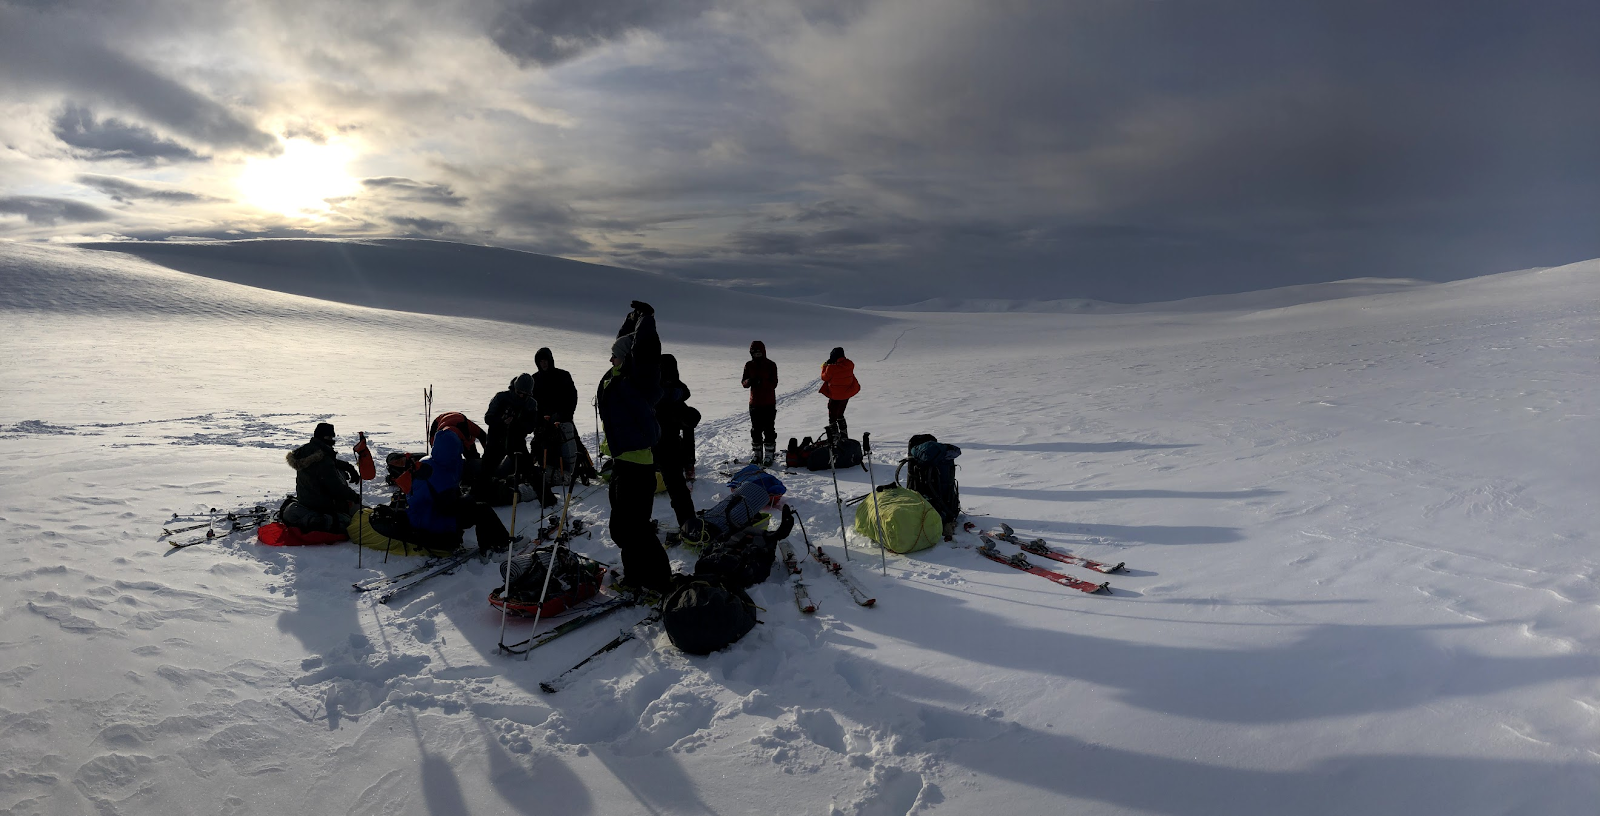 Отчет о лыжном туристском спортивном походе 2 (второй) категории сложности по Северной Швеции (Кунгследен)